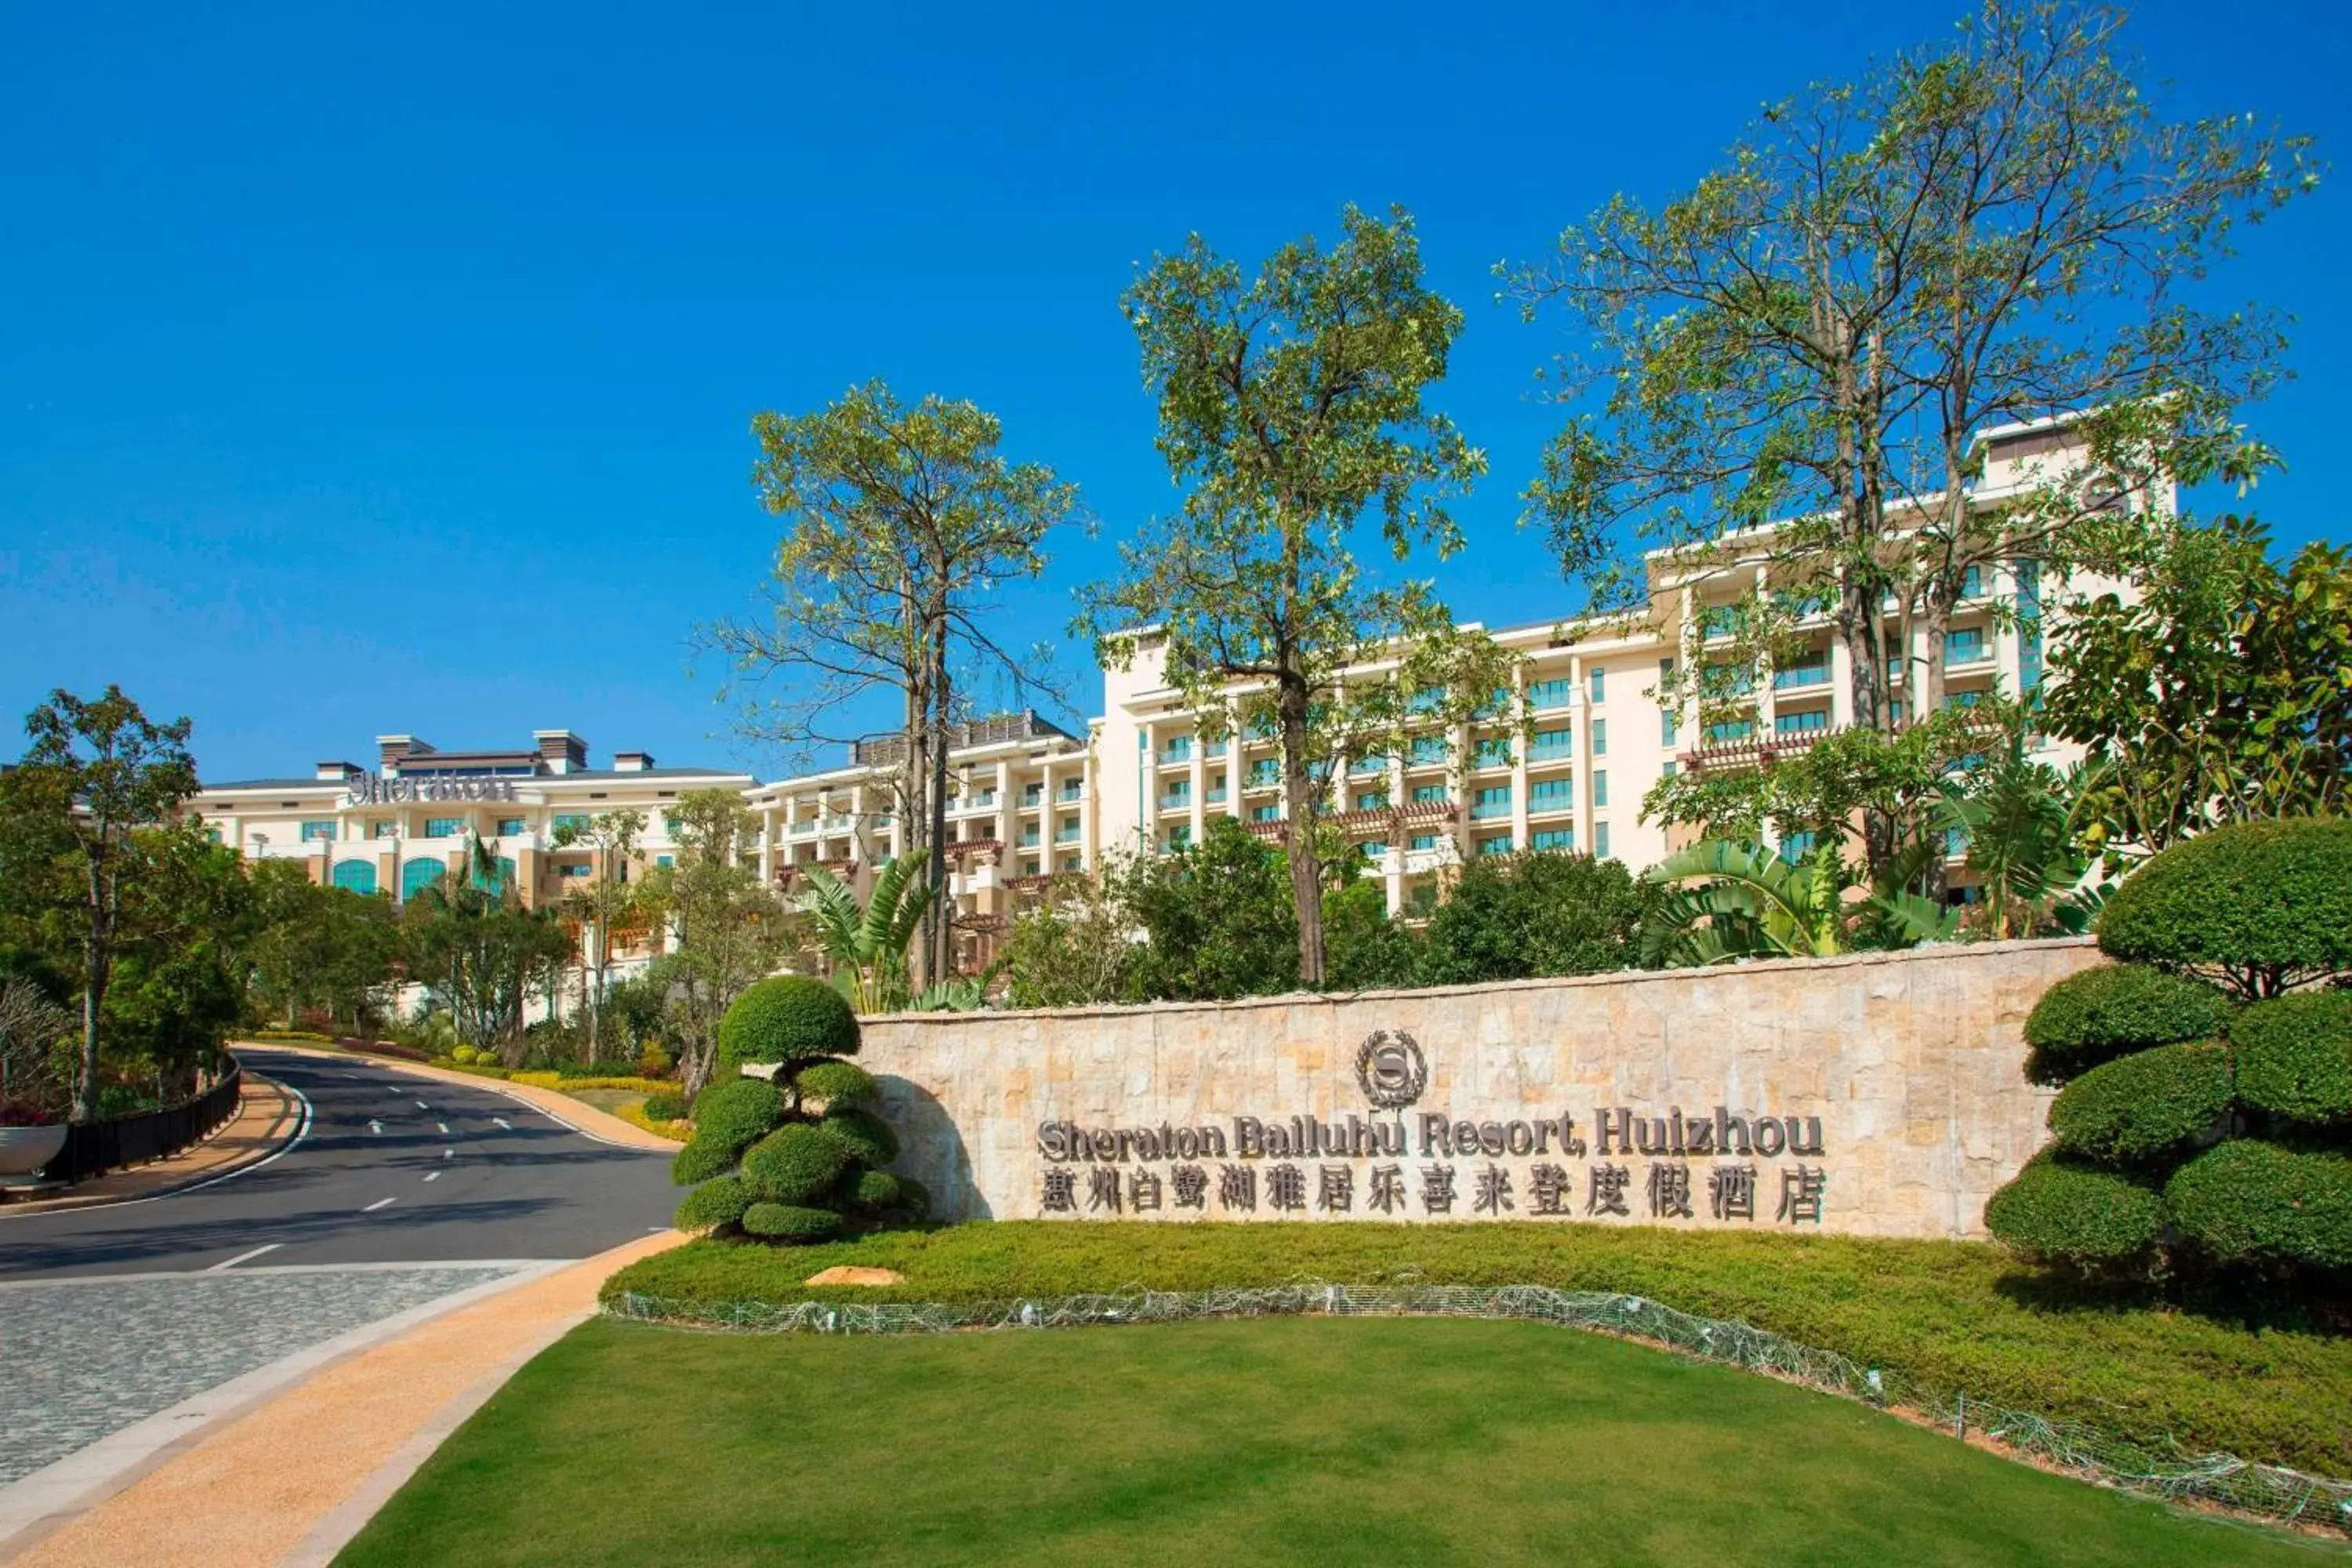 Property building in Sheraton Bailuhu Resort, Huizhou